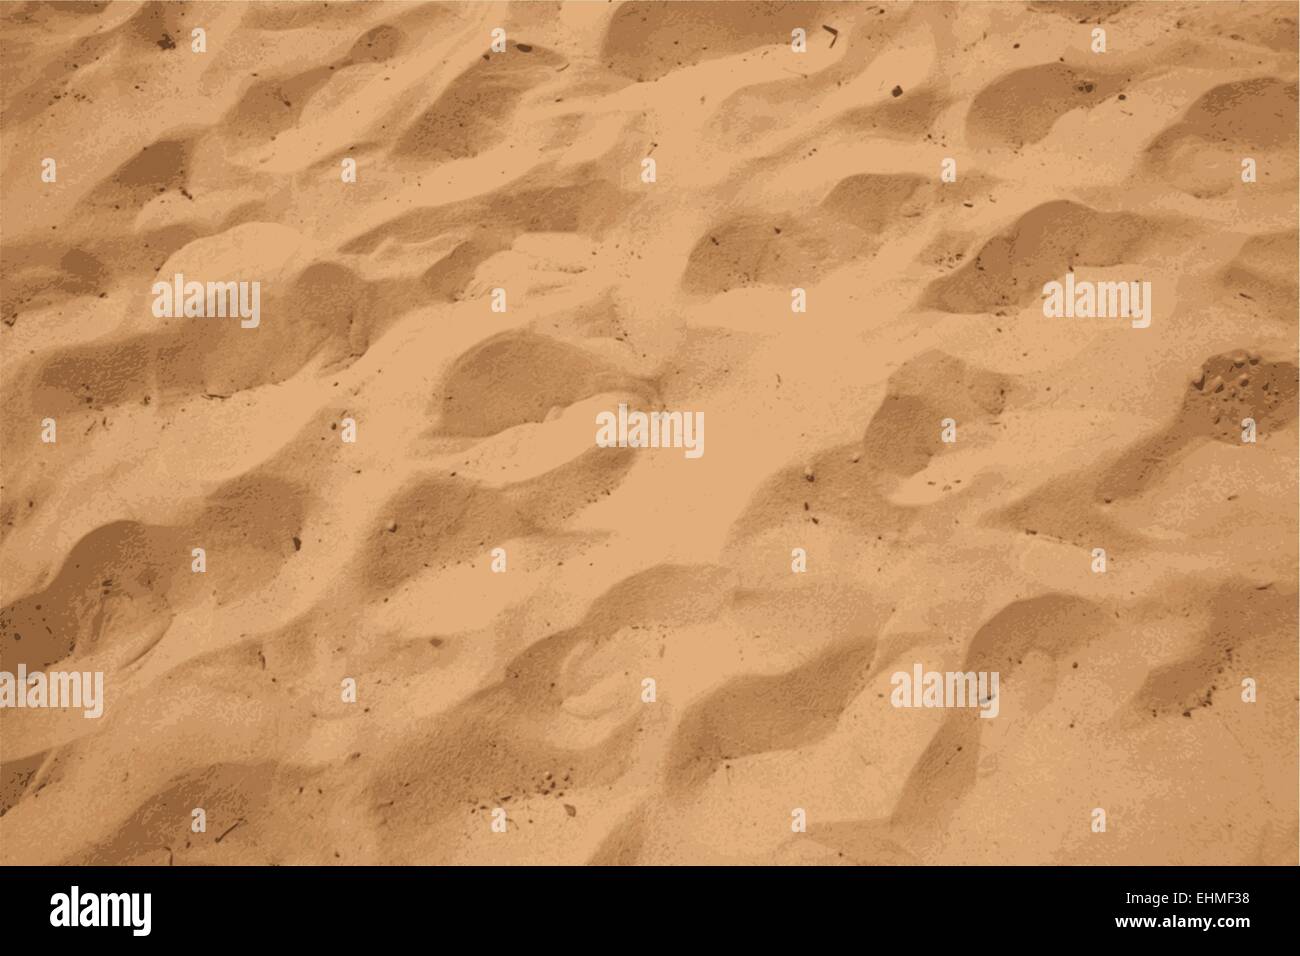 Vector desert brown sand texture Stock Vector